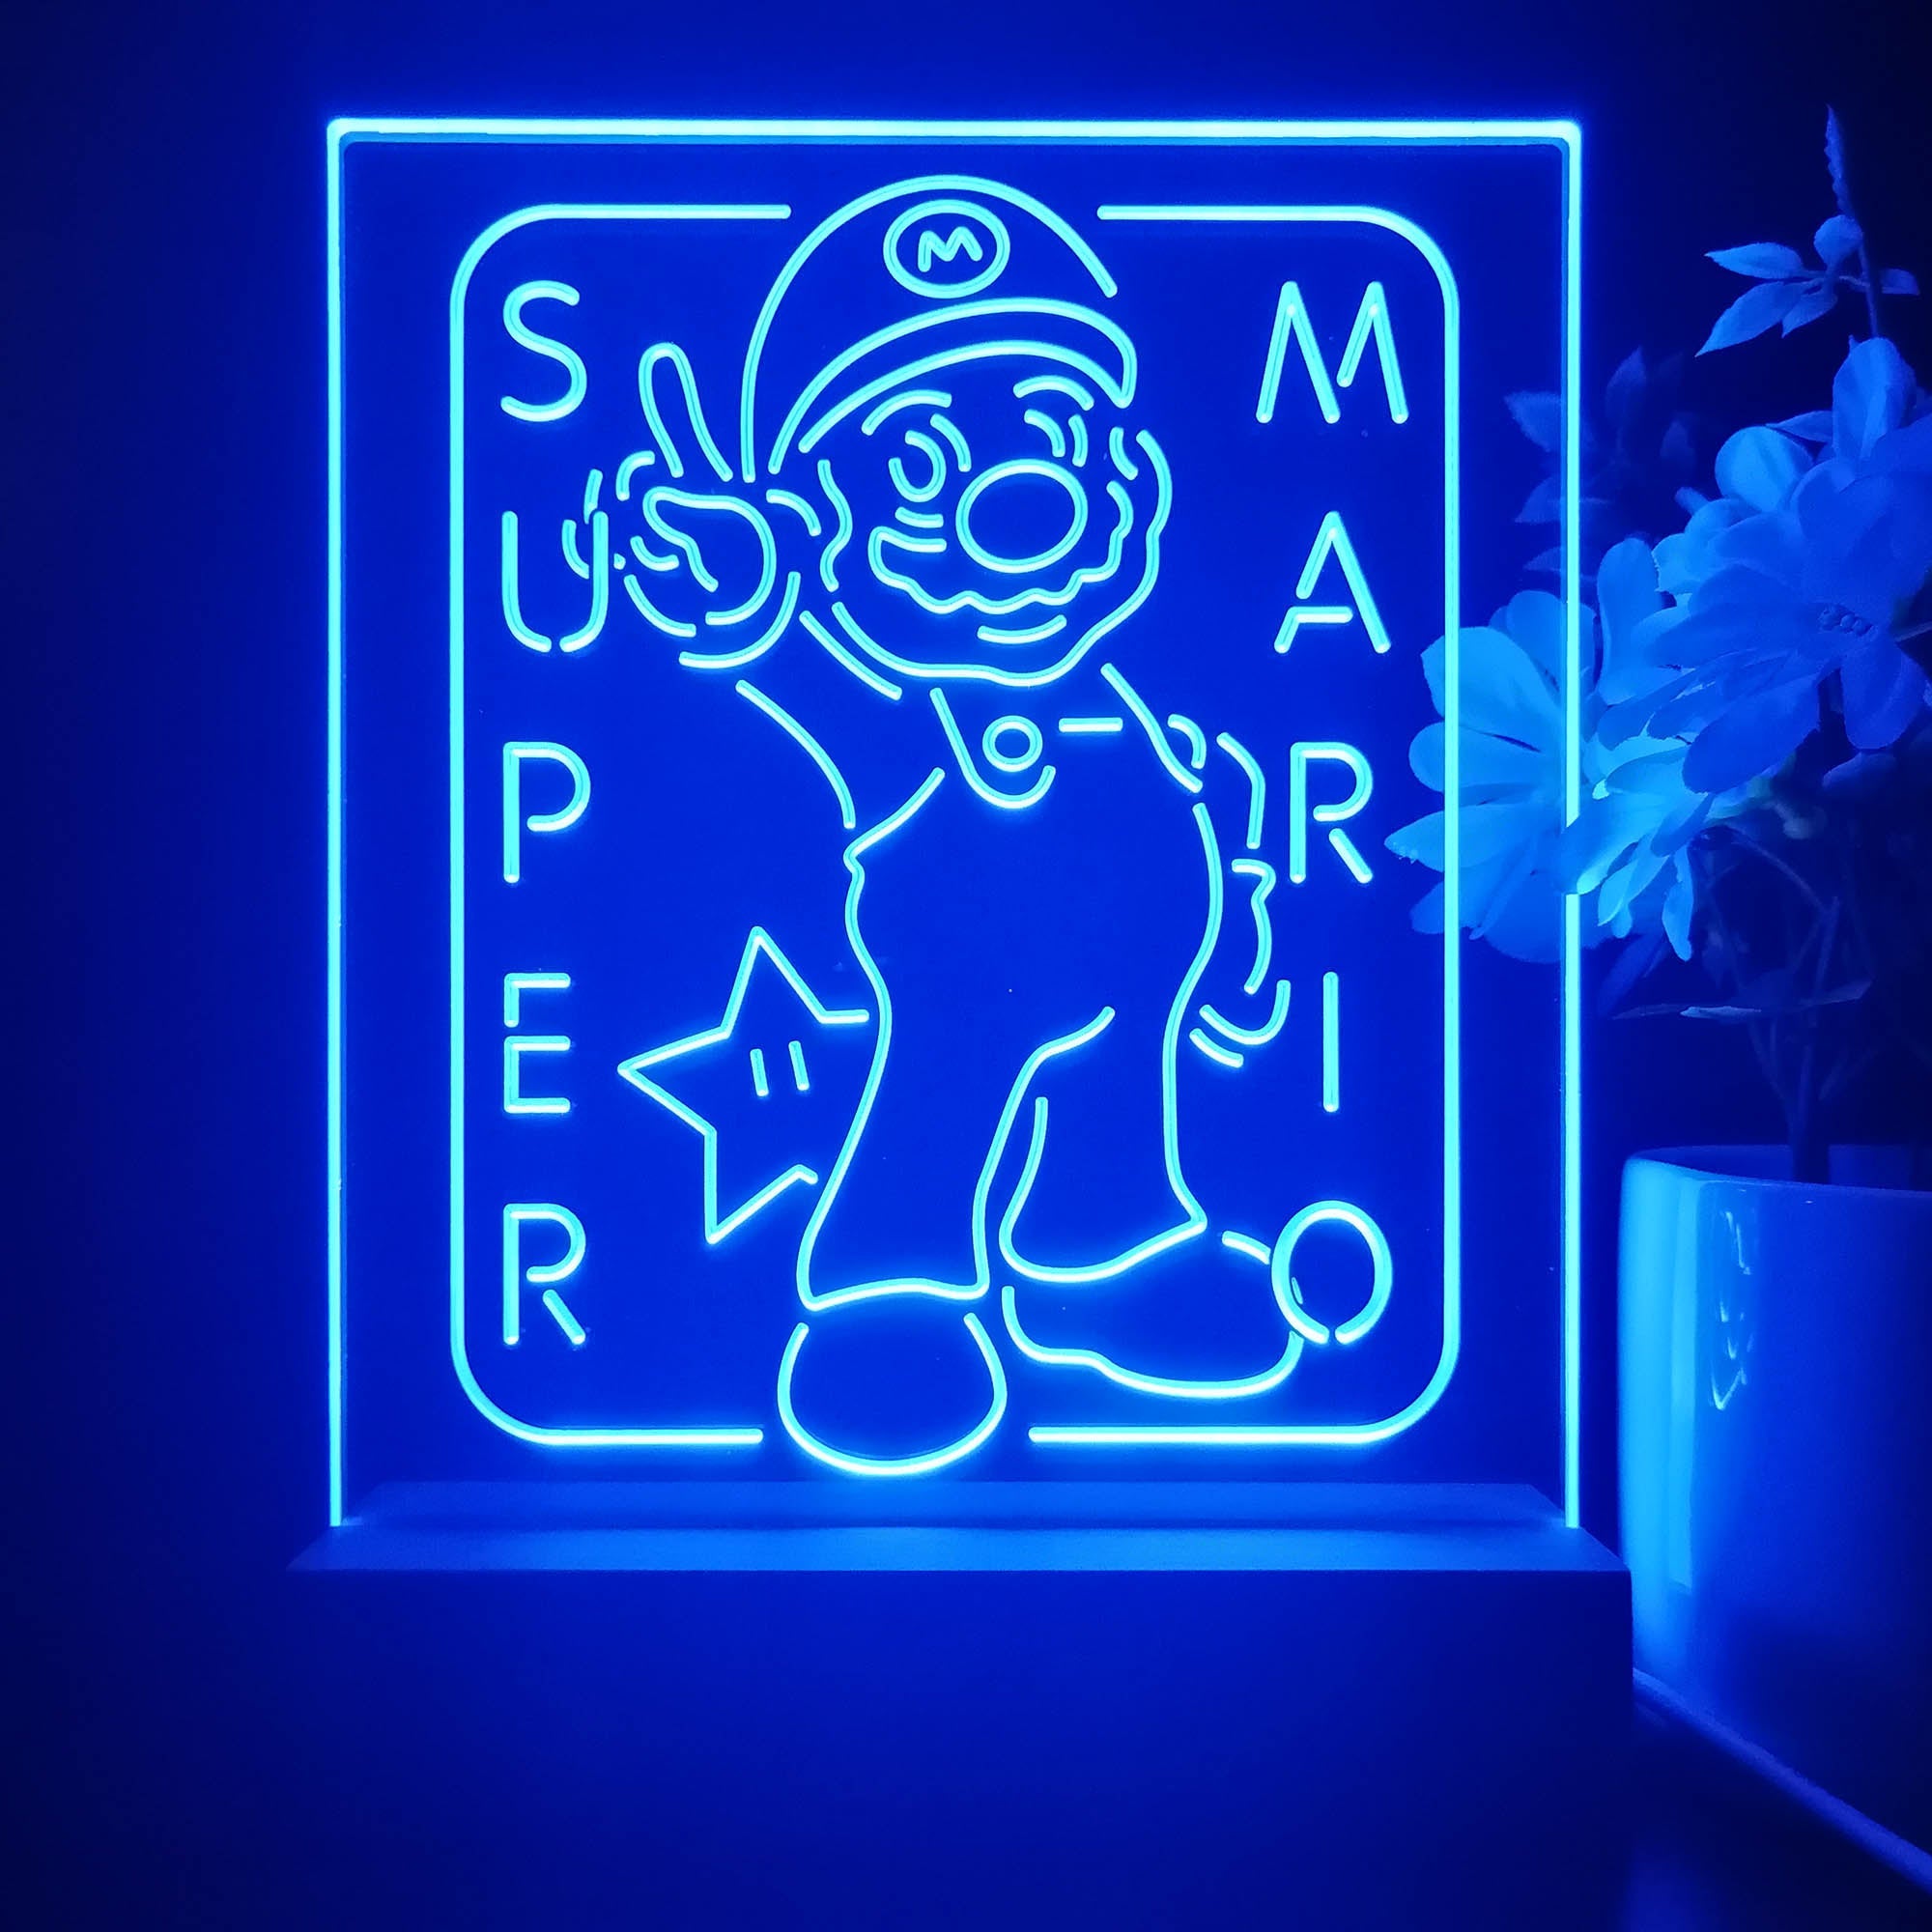 Super Mario 3D Illusion Night Light Desk Lamp